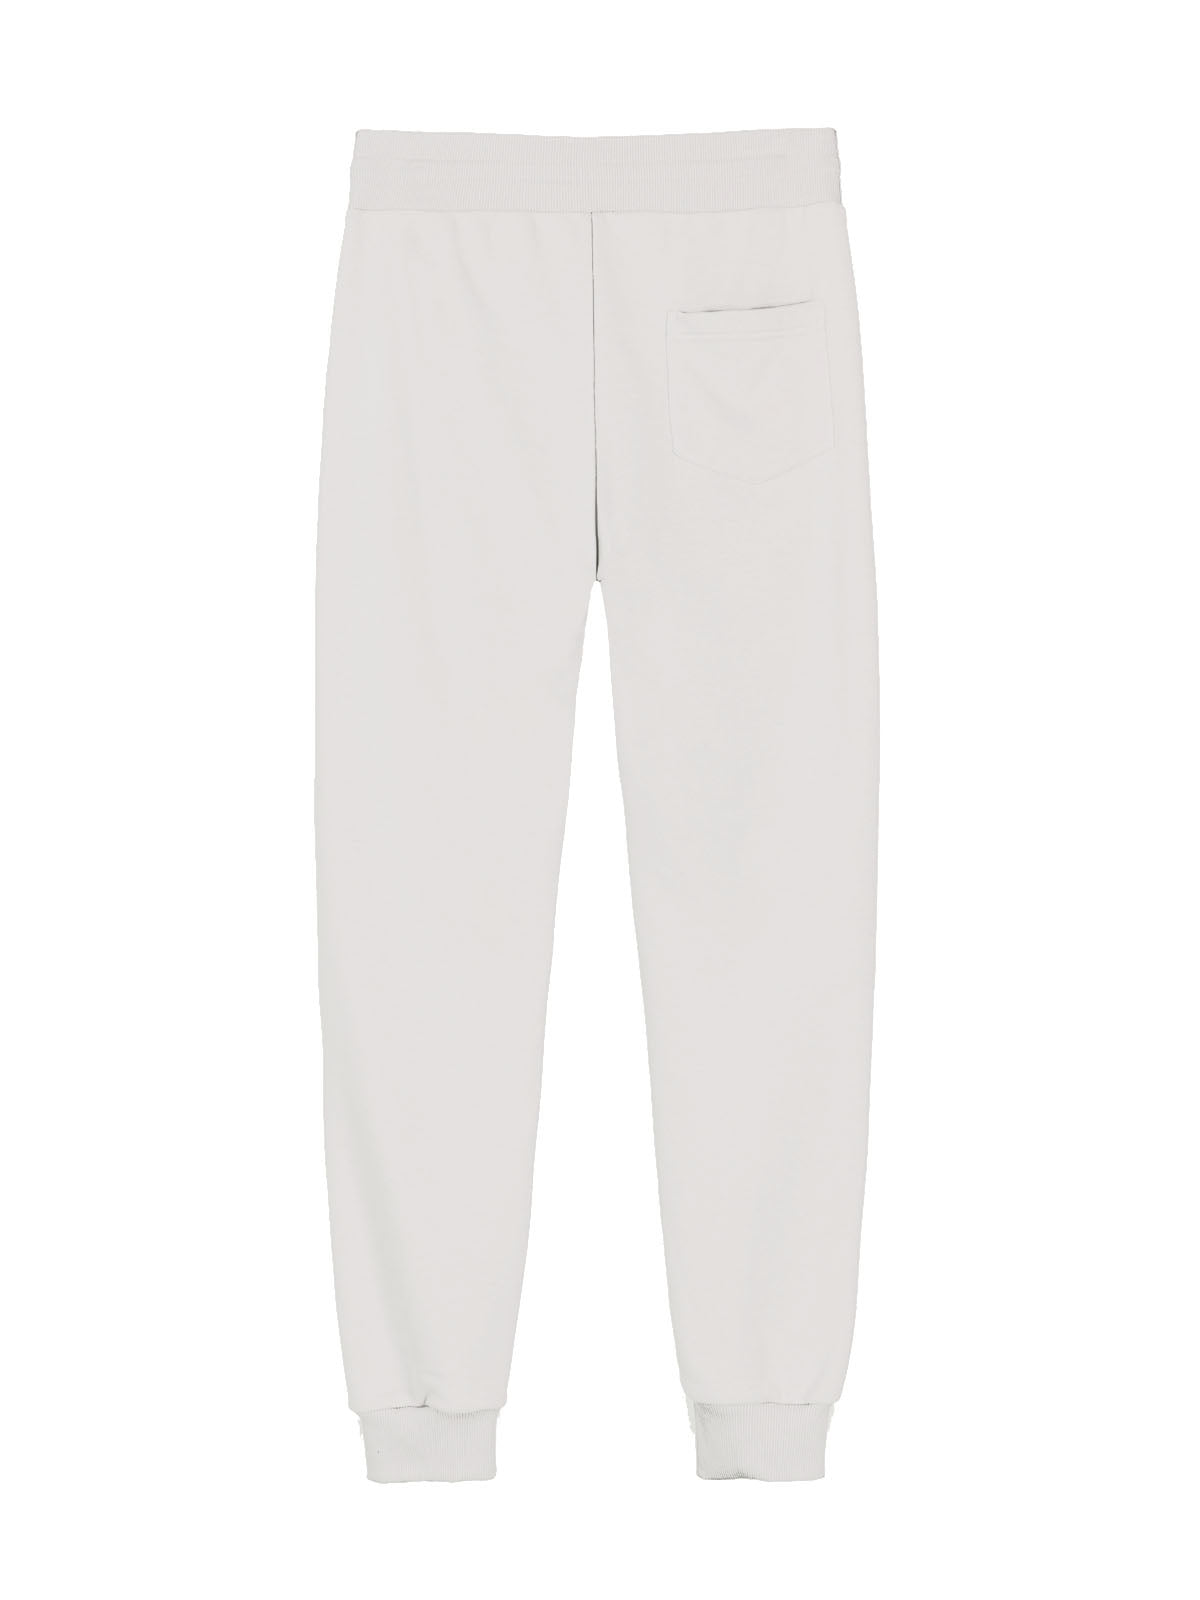 Pantaloni Uomo Colmar - Pantaloni In Felpa Con Taschino - Bianco